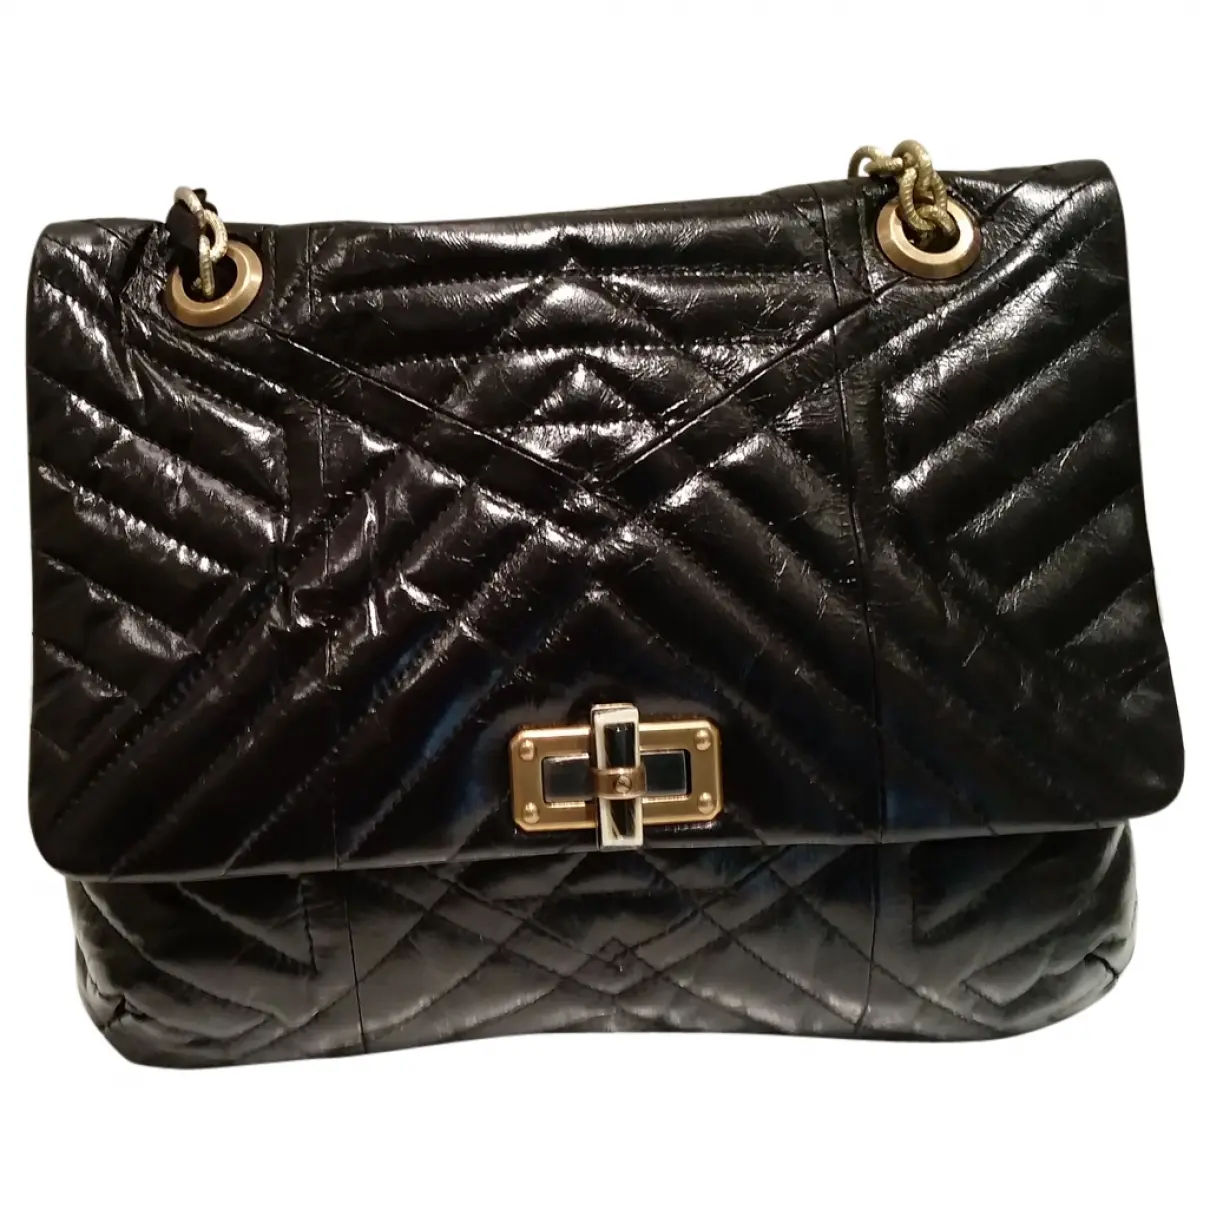 Black Leather Handbag Happy Lanvin